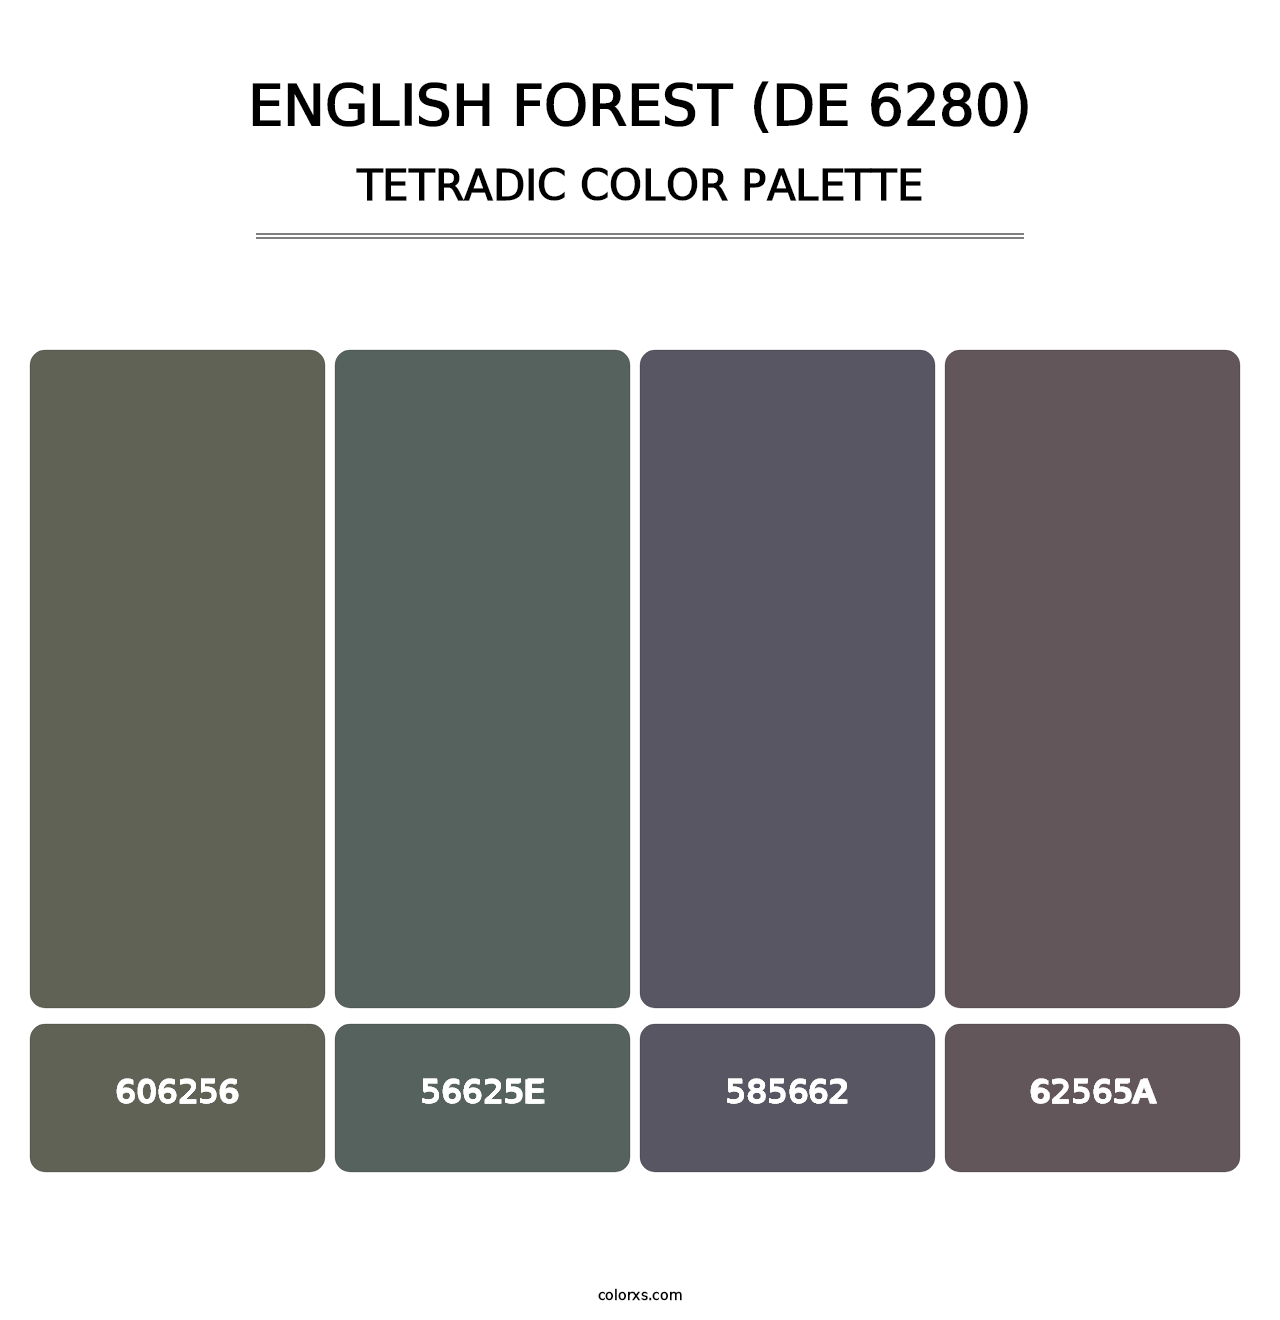 English Forest (DE 6280) - Tetradic Color Palette